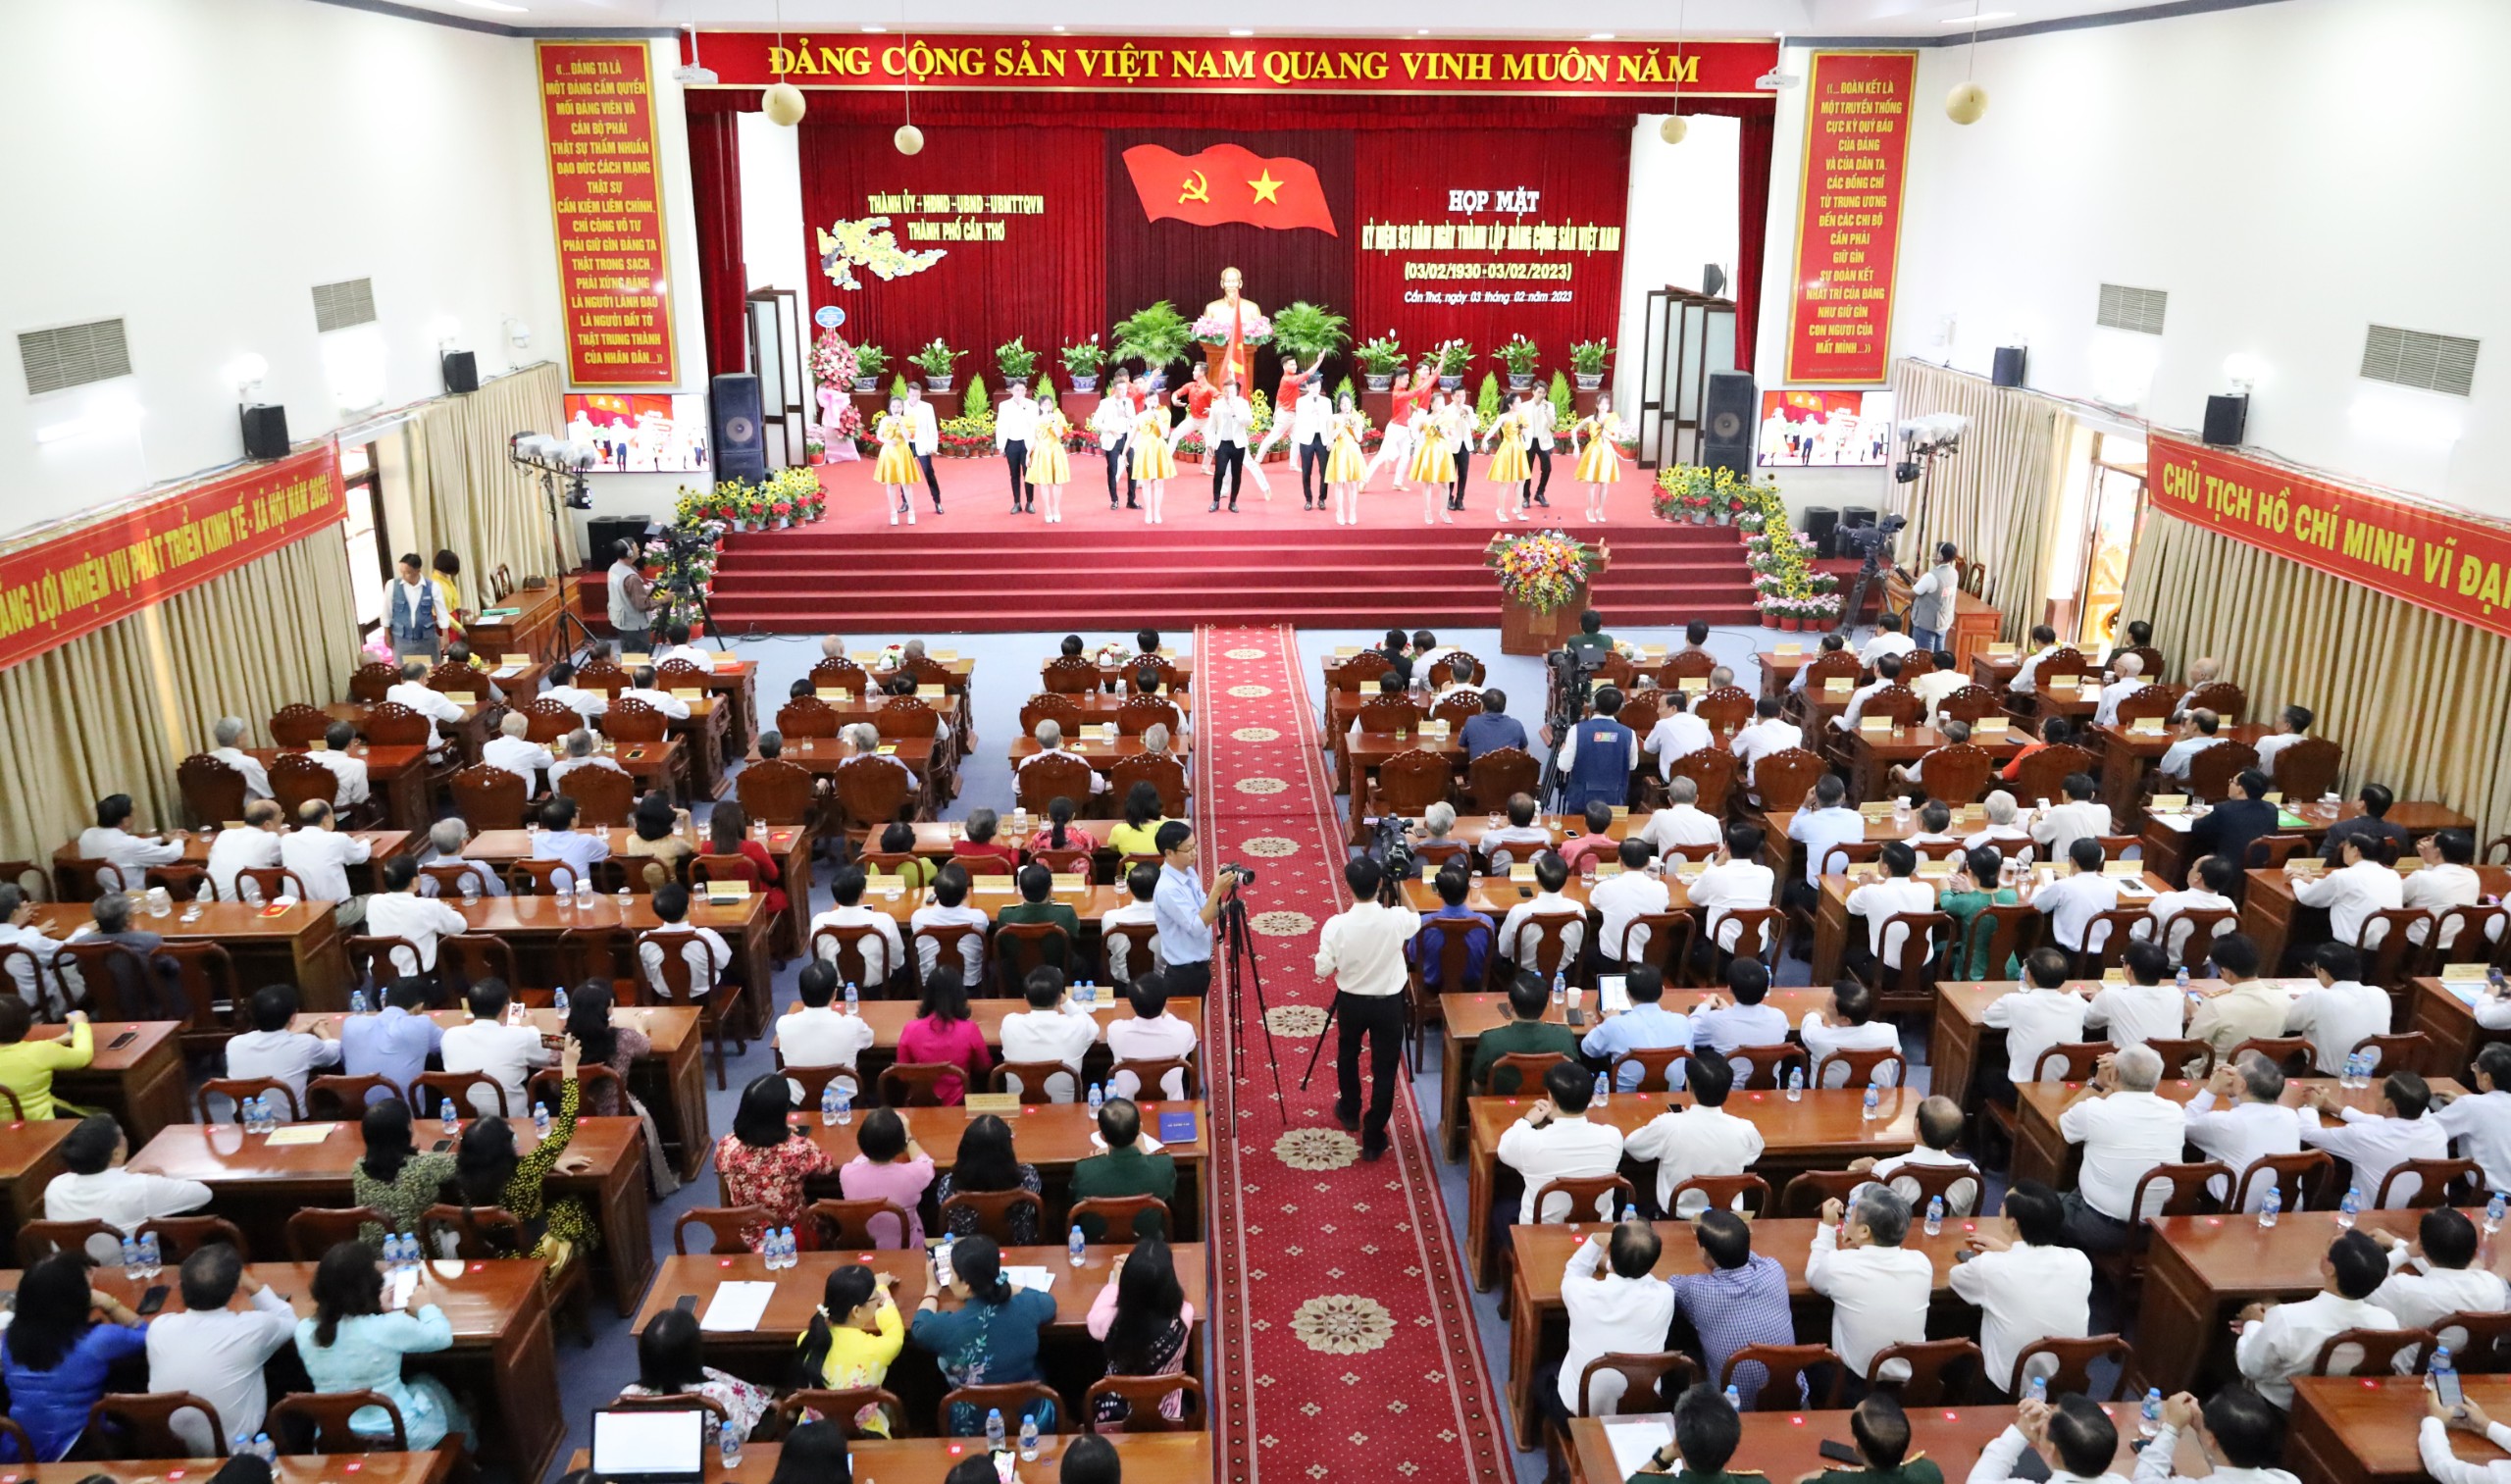 Quang cảnh buổi họp mặt Kỷ niệm 93 năm Ngày thành lập Đảng Cộng sản Việt Nam (3/2/1930 - 3/2/2023).